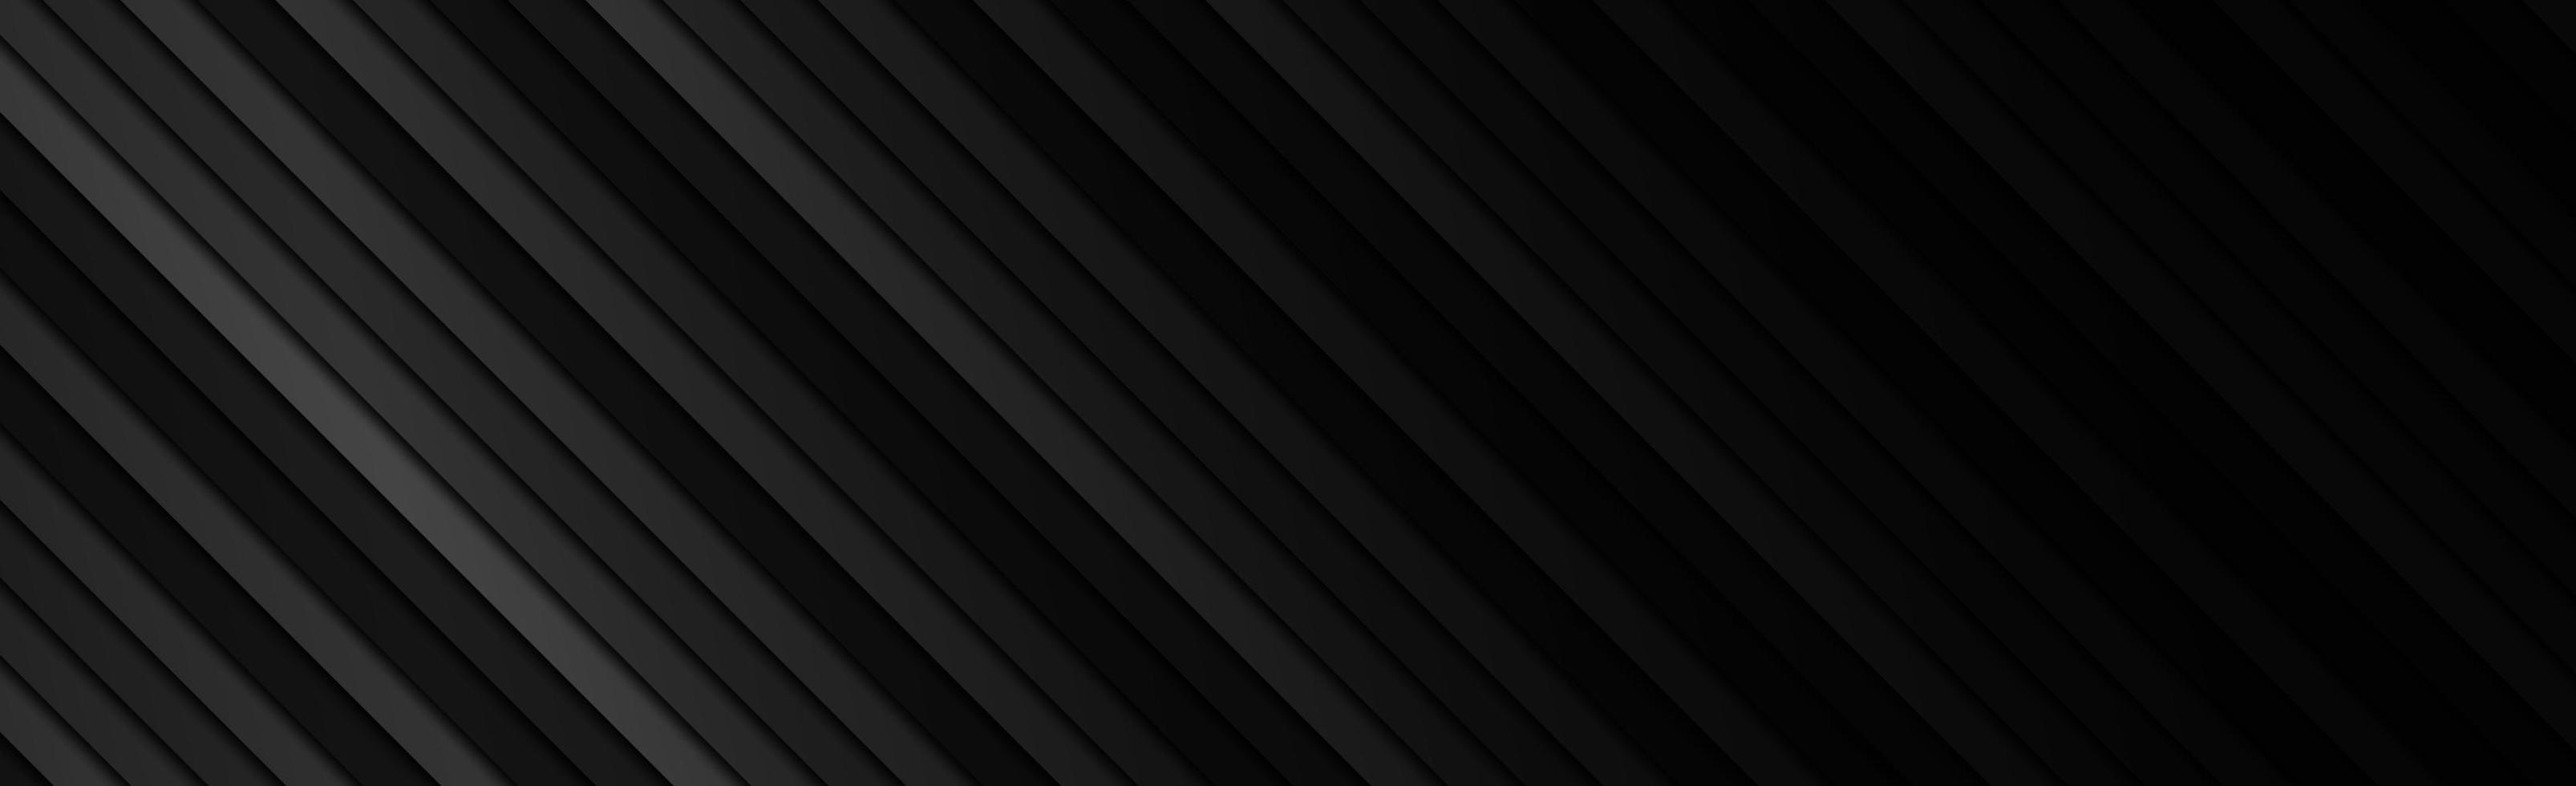 linhas diagonais pretas e cinzentas panorâmicas, fundo da web - vetor